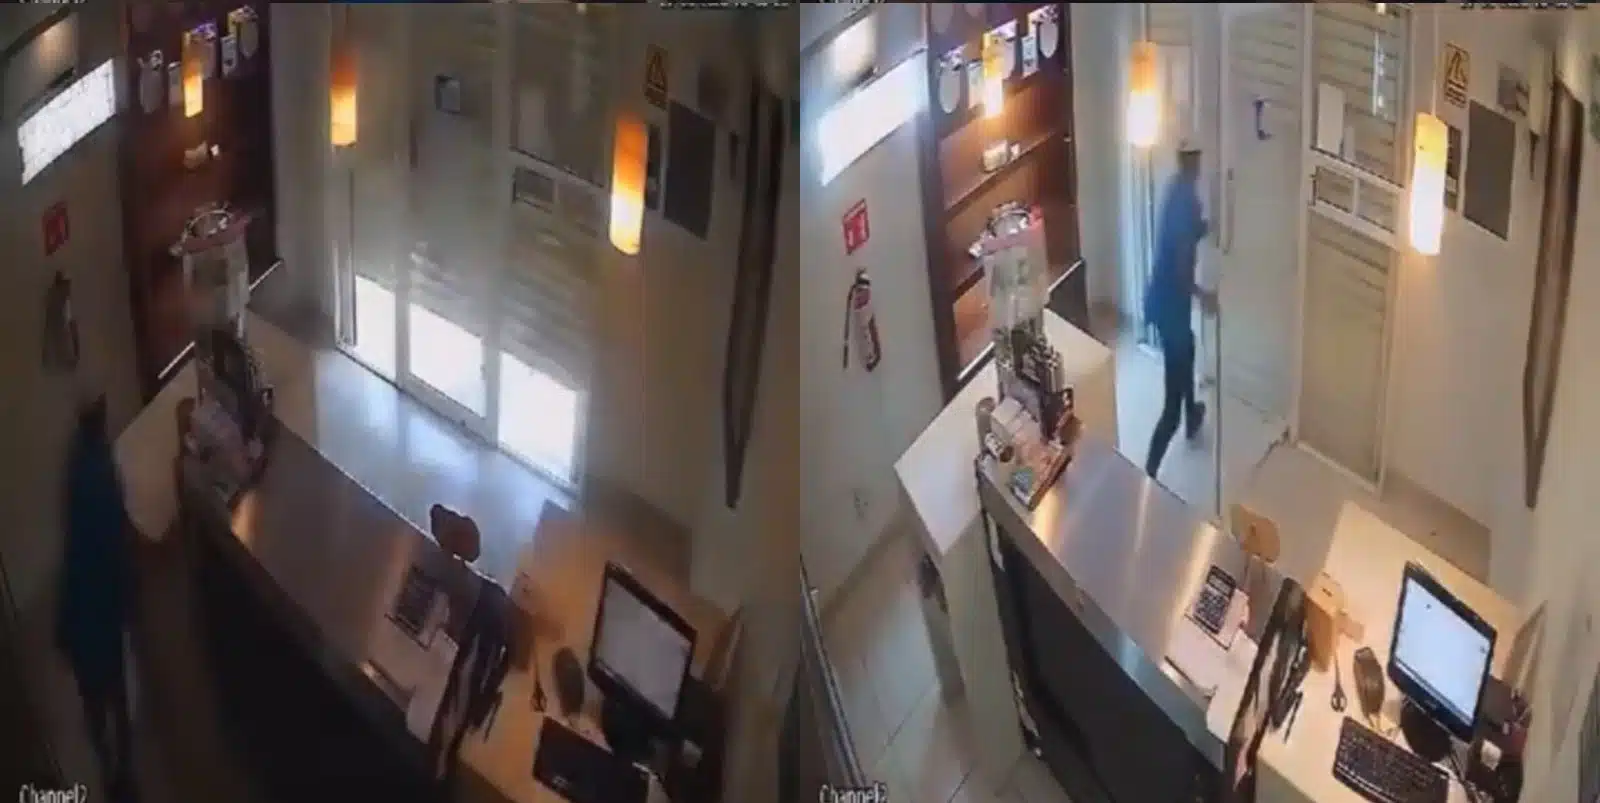 Dos imagenes del video viral del ladrón atrapado